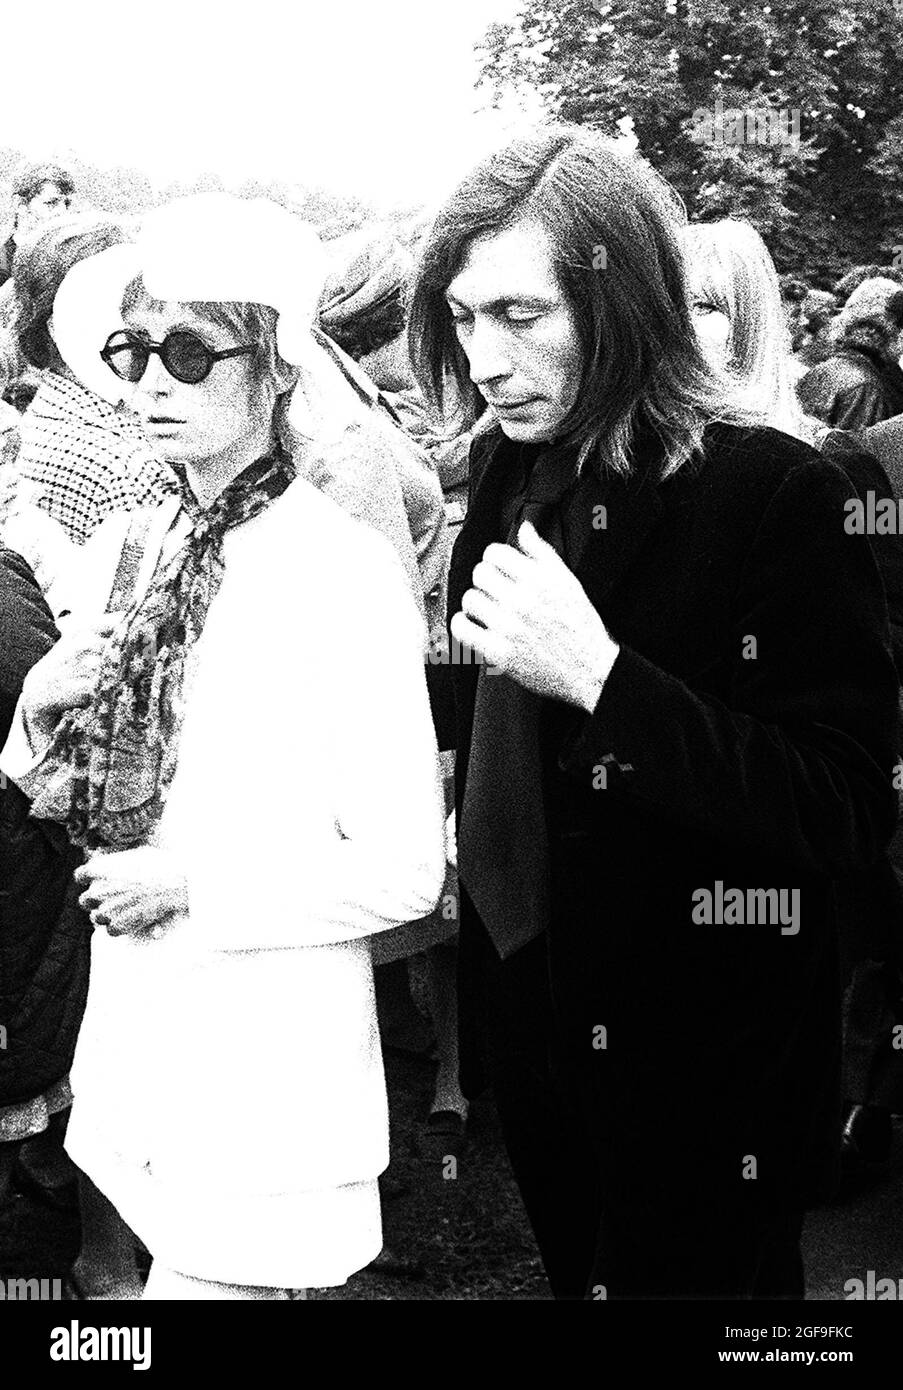 Photo du dossier datée du 10/07/69 de Charlie Watts des Rolling Stones et de son épouse Shirley au cimetière de Brian Jones. Ancien guitariste du groupe, dont les funérailles ont eu lieu à Cheltenham., Gloucestershire. Le batteur Rolling Stones Charlie Watts est décédé à l'âge de 80 ans, a déclaré Bernard Doherty, son attaché de presse londonien, à l'agence de presse de l'AP. Date de publication : le mardi 24 août 2021. Banque D'Images